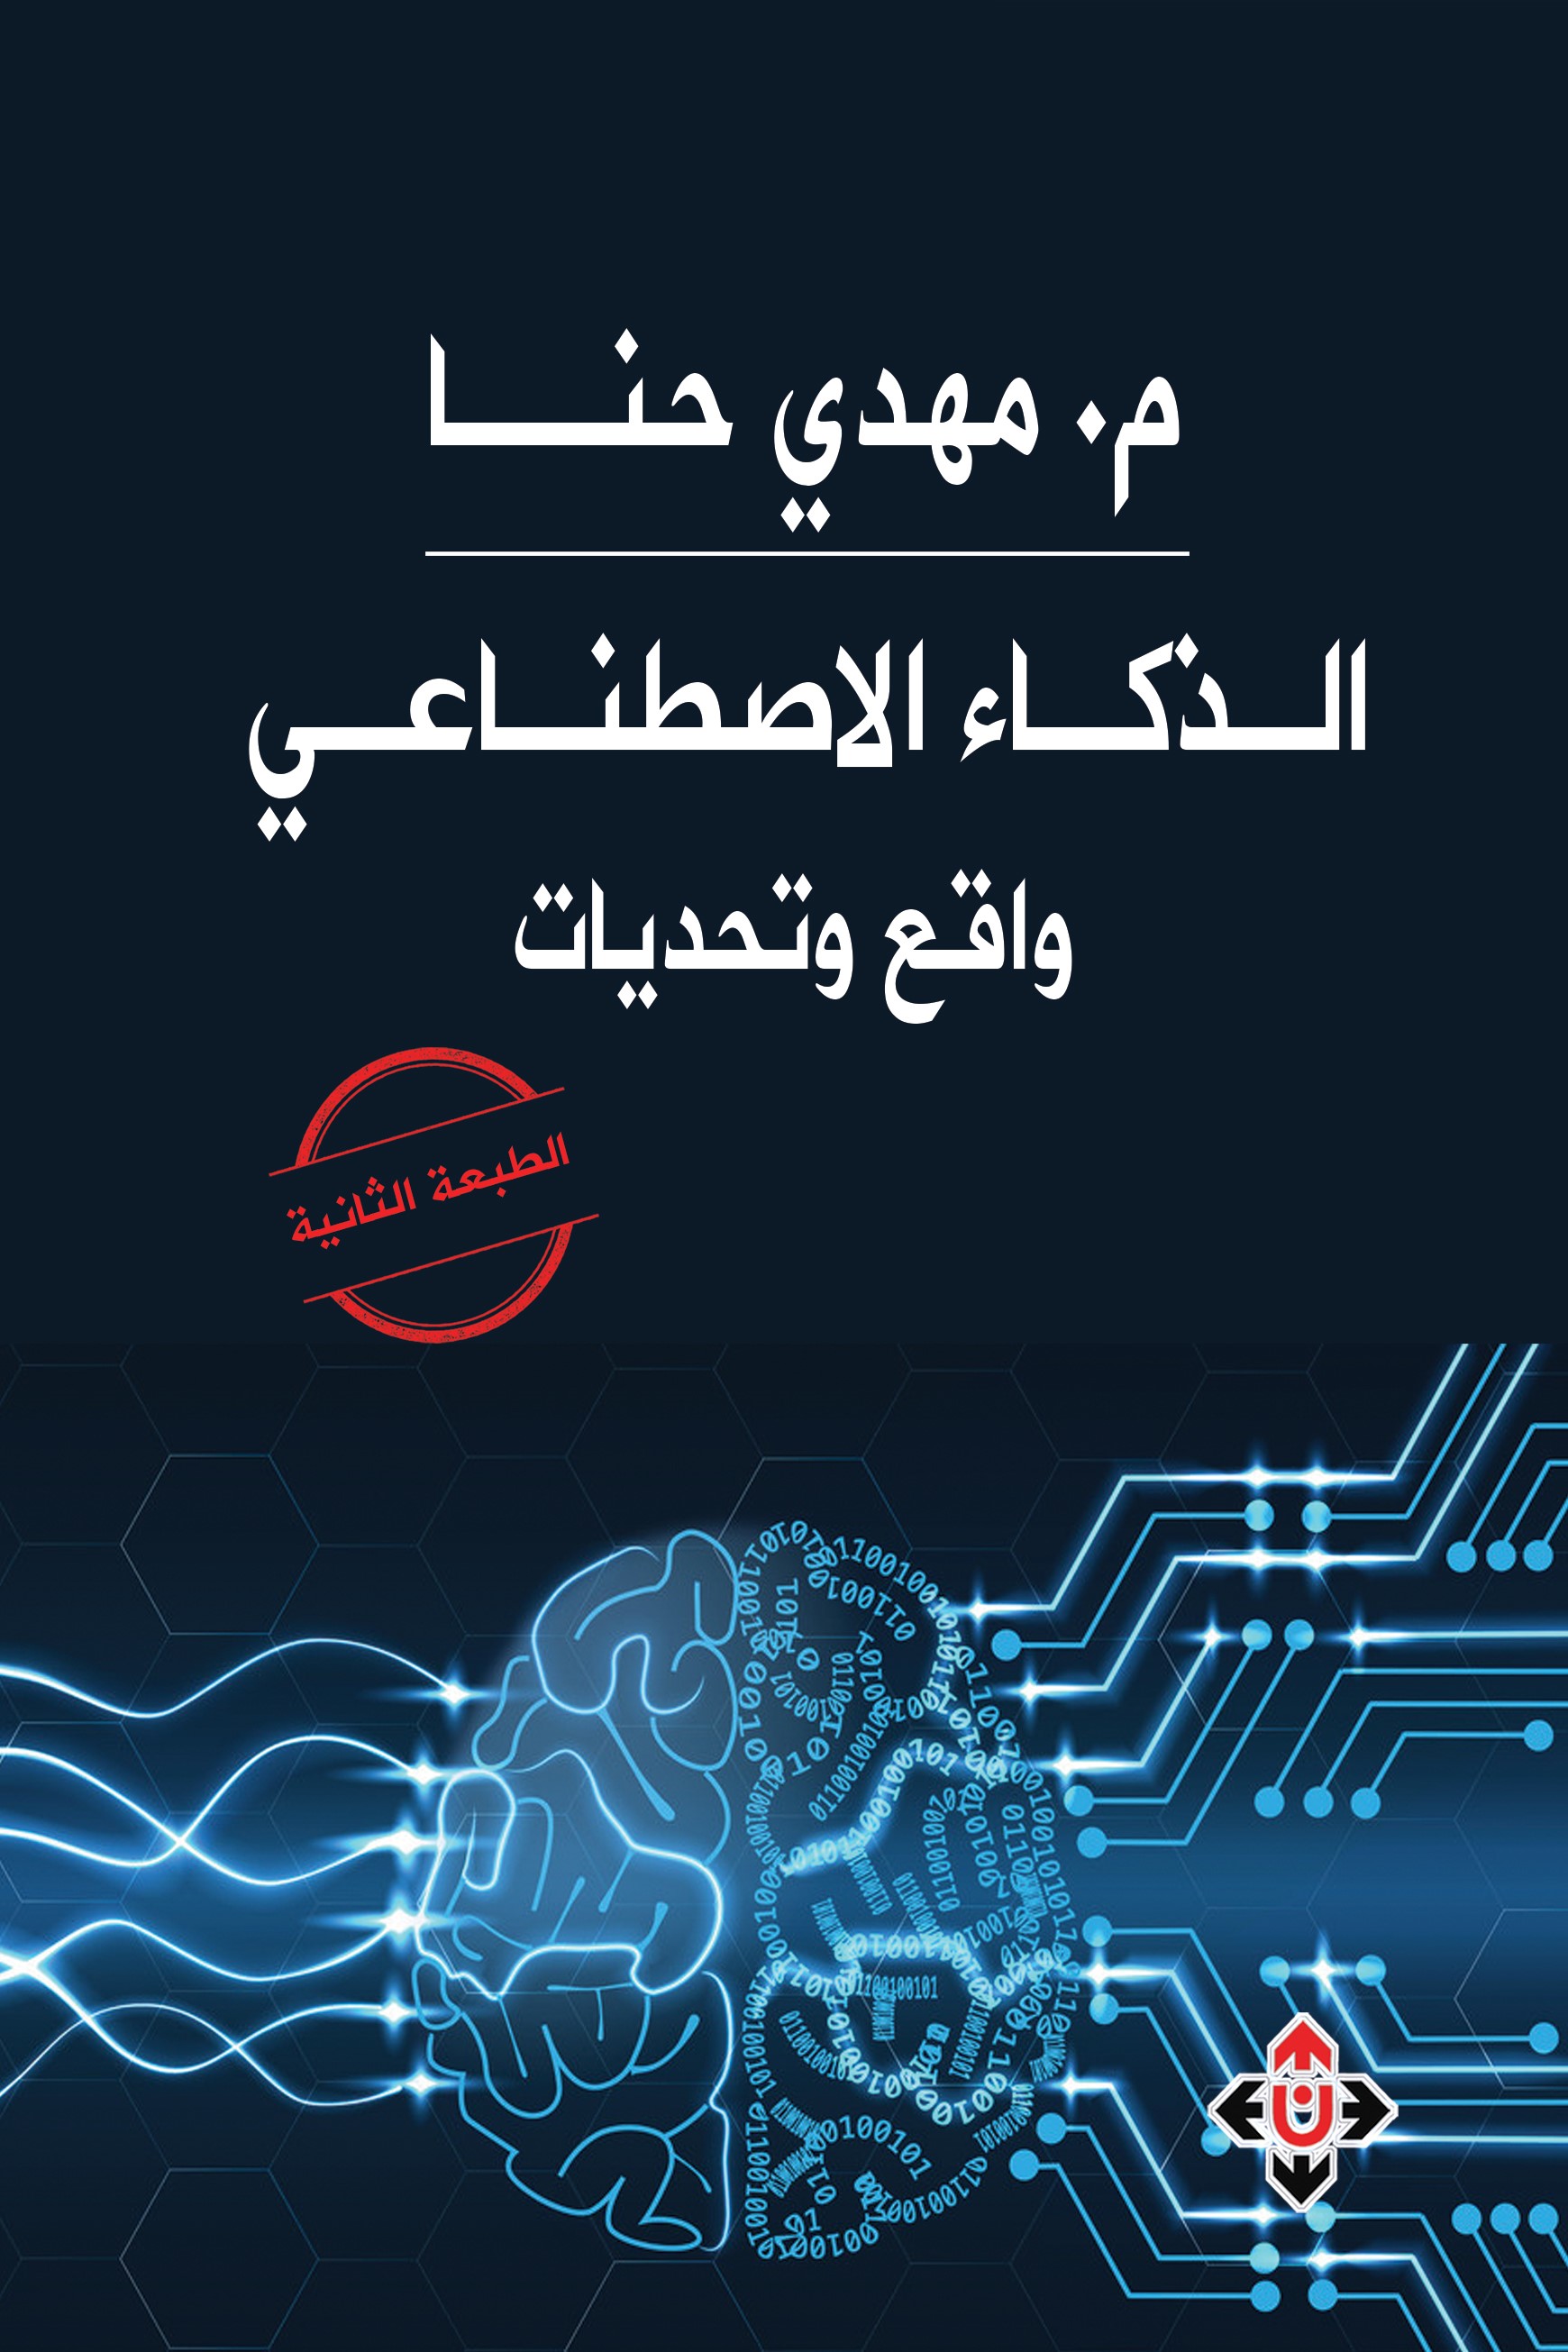 صدور الطبعة الثانية من الذكاء الاصطناعي ..  واقع وتحديات